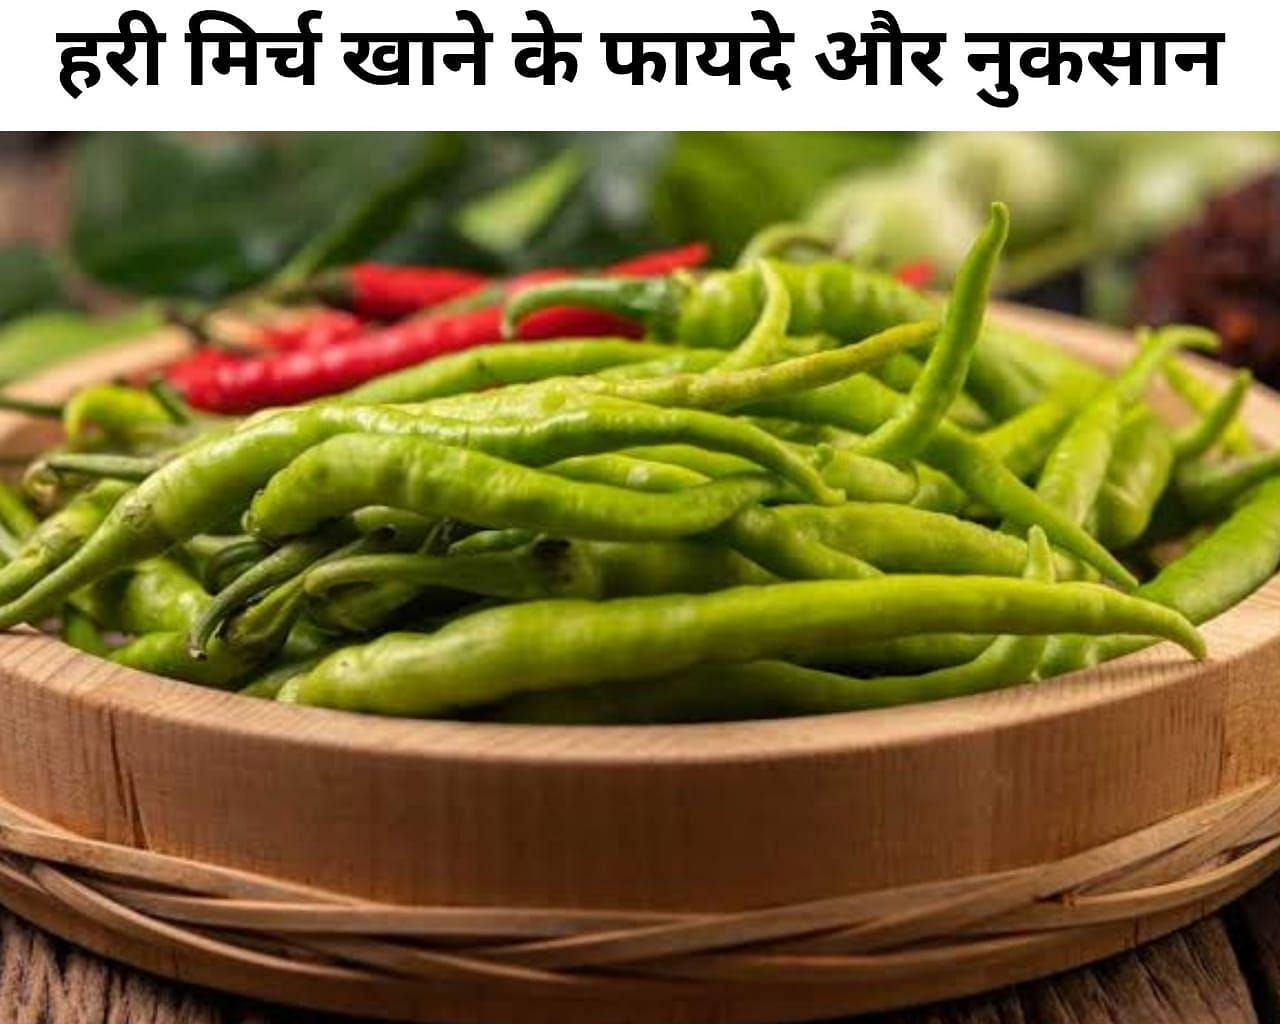 हरी खाने के फायदे और नुकसान (sportskeeda Hindi)